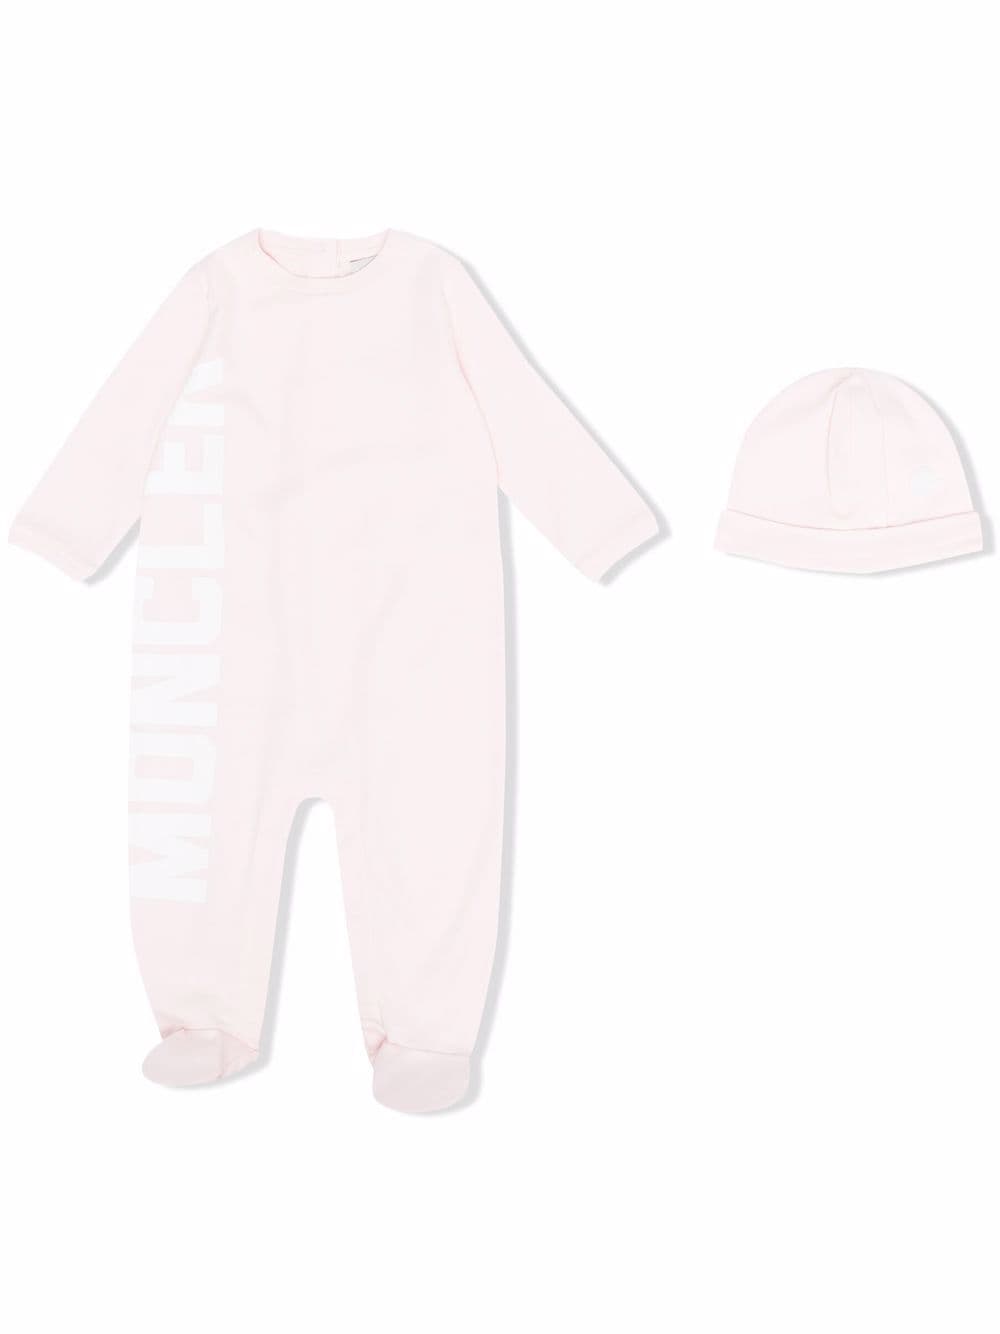 Moncler Enfant logo babygrow set - Pink von Moncler Enfant